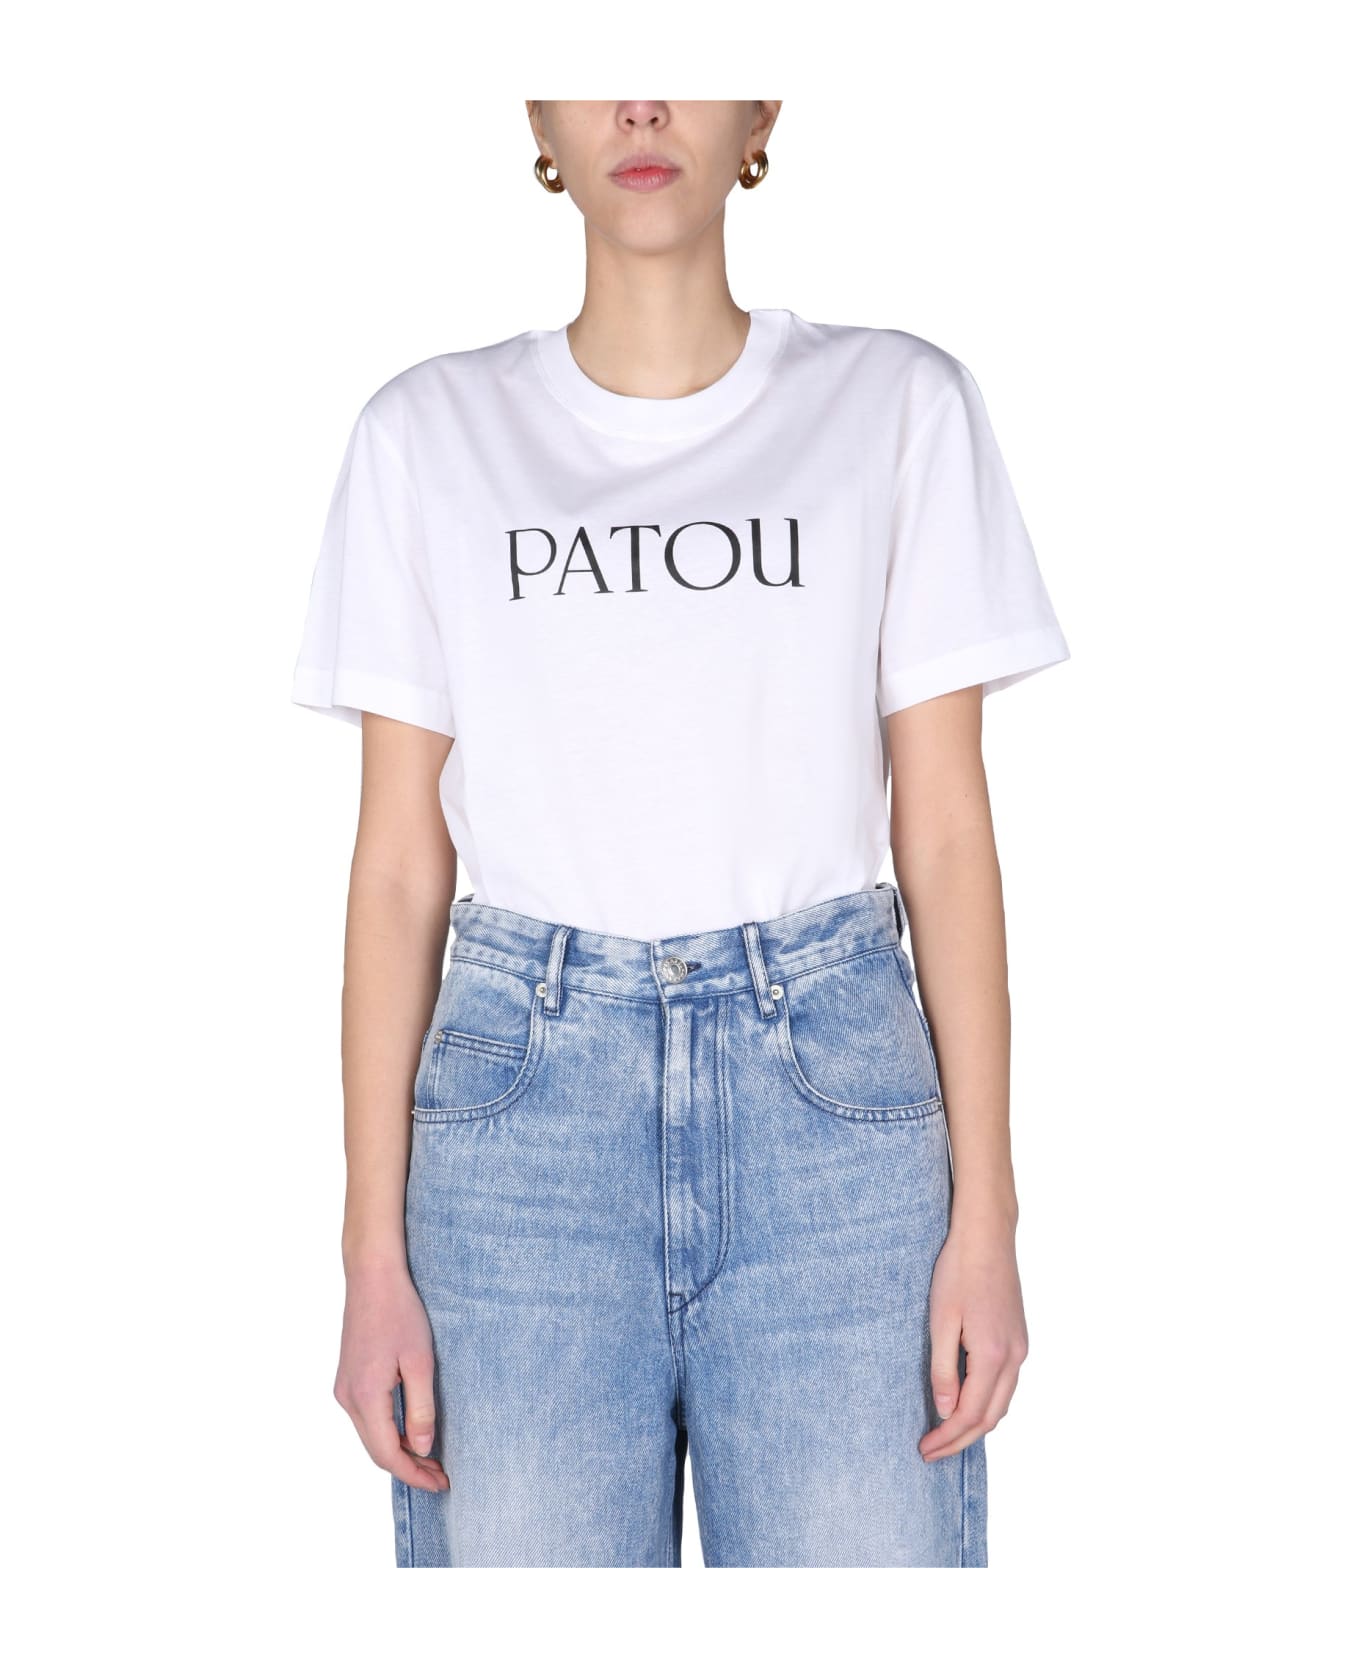 Patou Logo Print T-shirt - WHITE